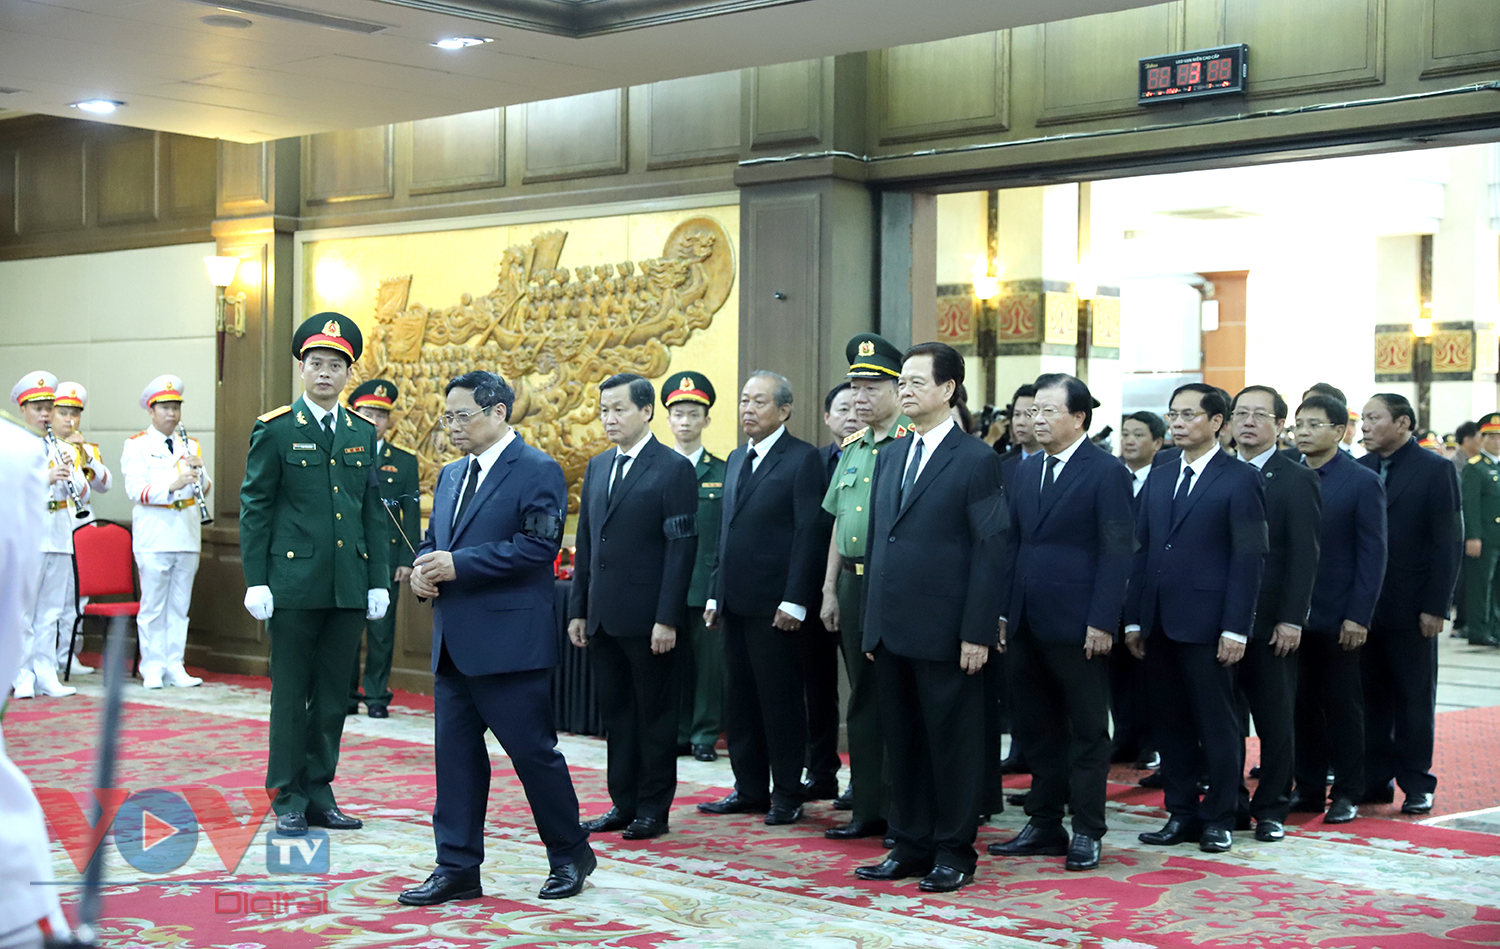 Lãnh đạo Đảng, Nhà nước viếng Phó Thủ tướng Lê Văn Thành tại Hải Phòng - Ảnh 7.